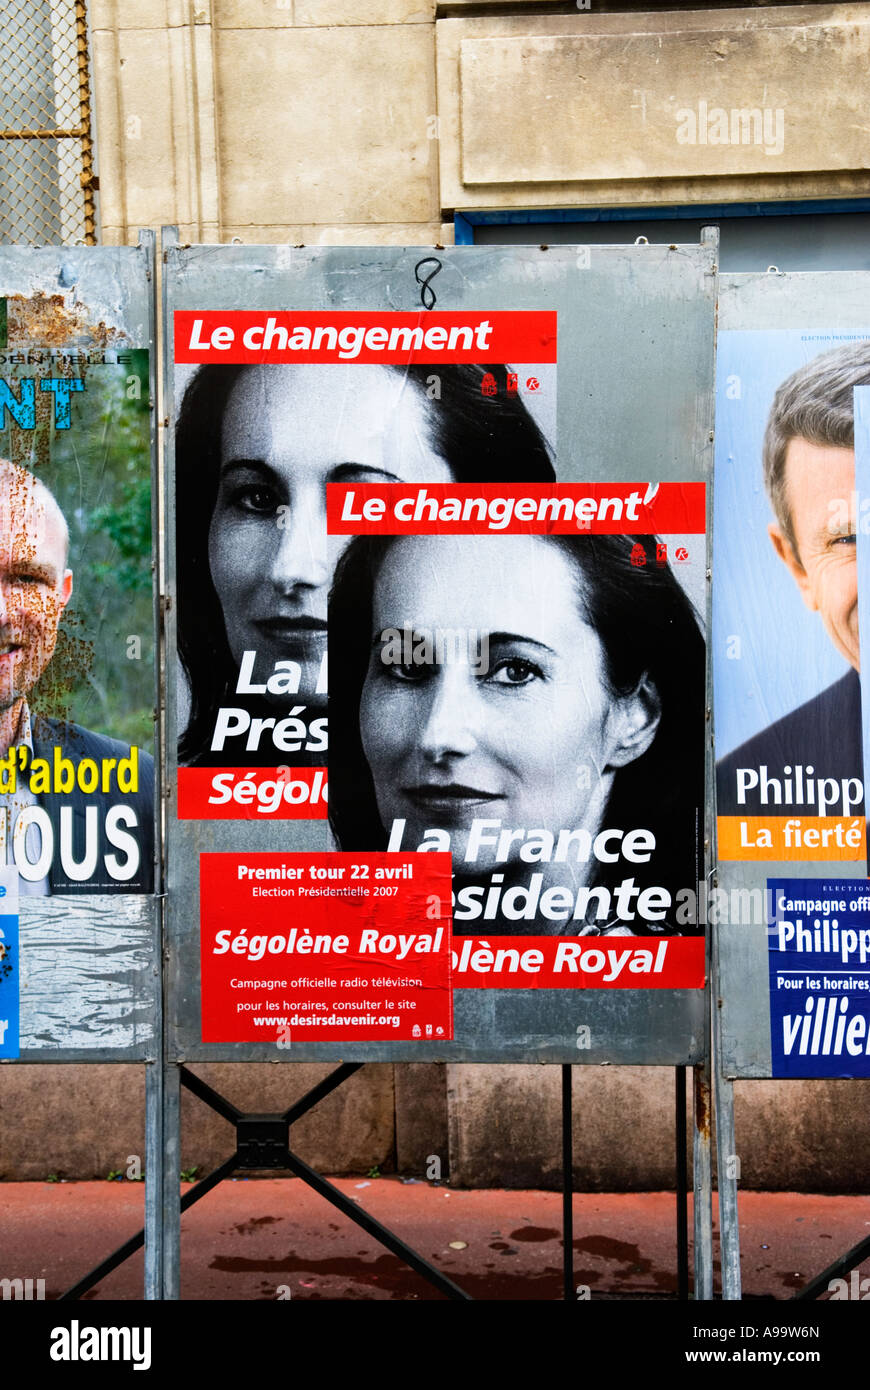 436 ein Wahlplakat der französischen Präsidentschaftskandidaten Ségolène Royal während ihrer Kampagne zu Office 2007 Stockfoto